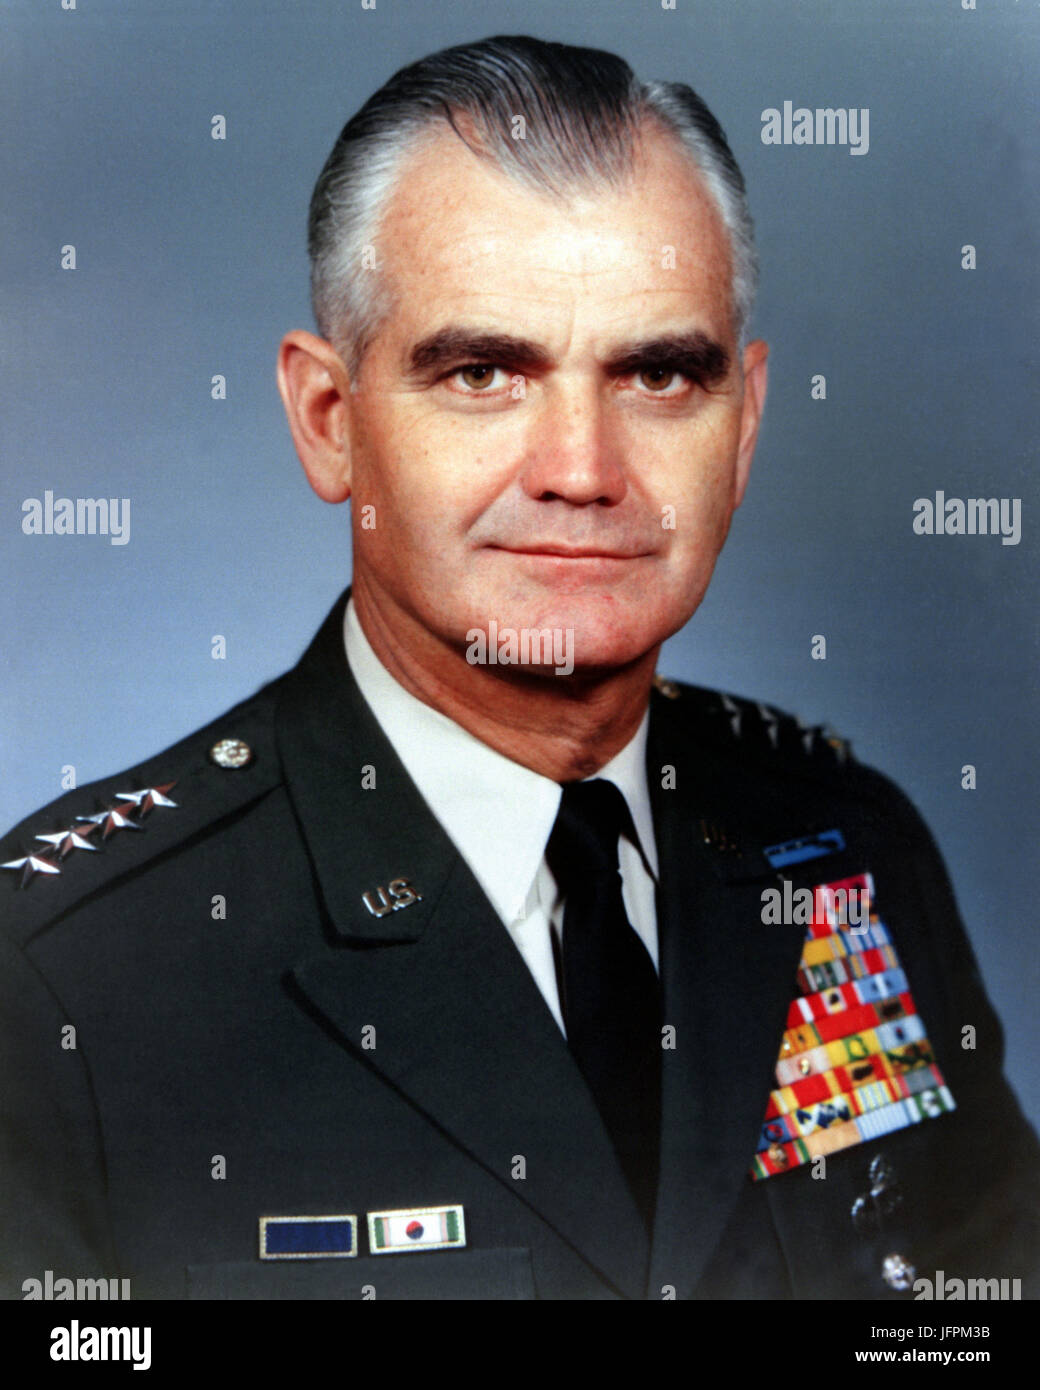 Foto oficial del Jefe del Estado Mayor del Ejército de GEN William C. Westmoreland. La época de la guerra de Vietnam. Foto de stock